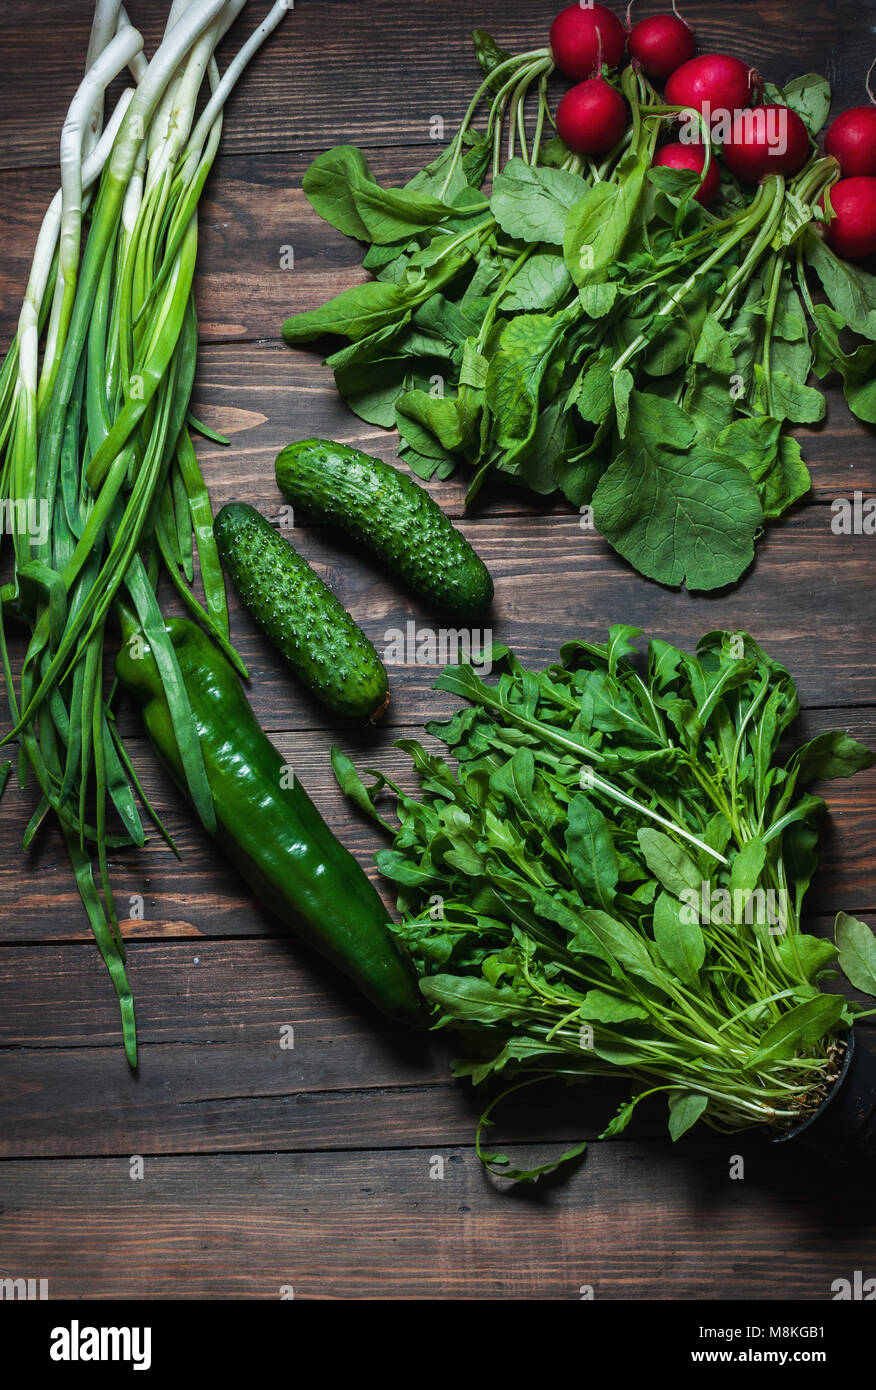 Frühling Hintergrund mit frischen saftigen Gemüse wie grüne Zwiebeln, Rucola, Gurken und Radieschen. Gesunde Ernährung Konzept. Veganes essen. Stockfoto